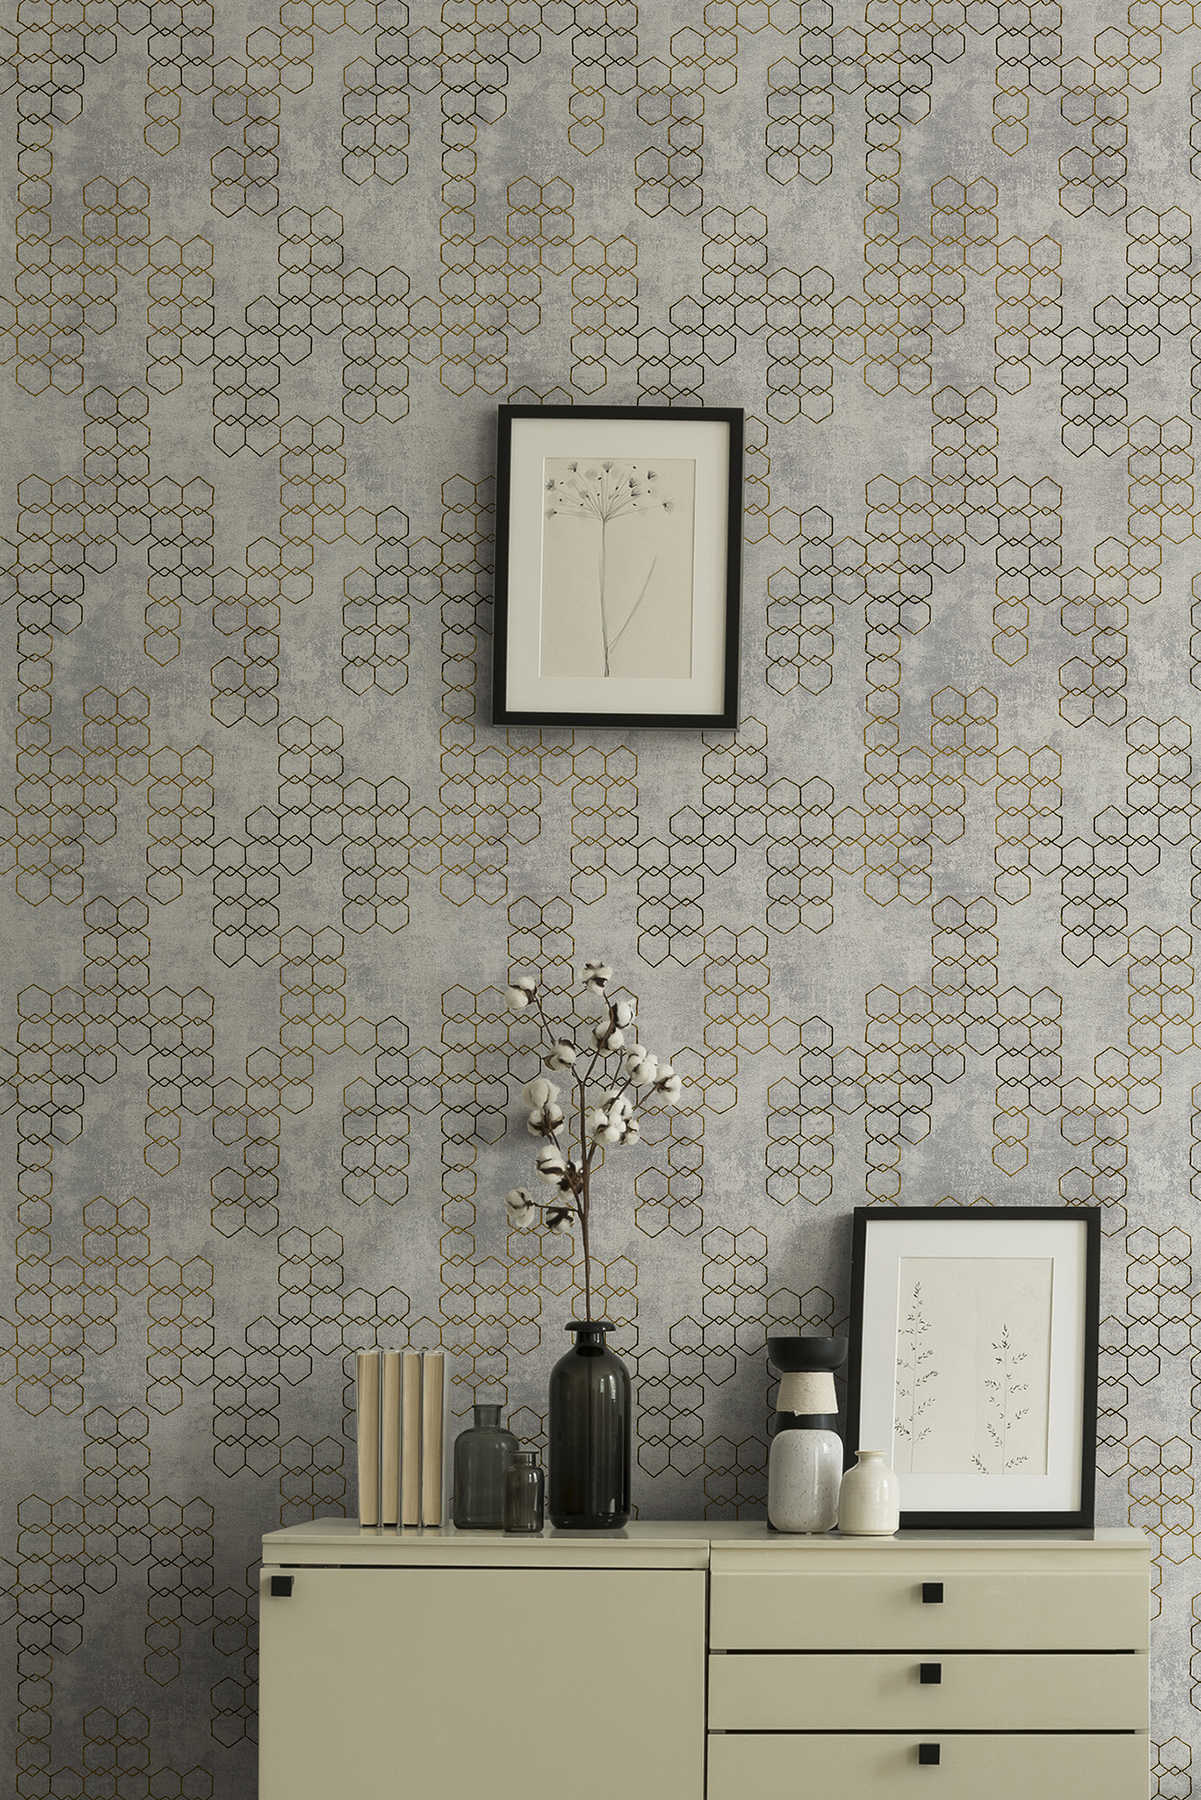             behang modern design goud & beton effect - grijs, goud
        